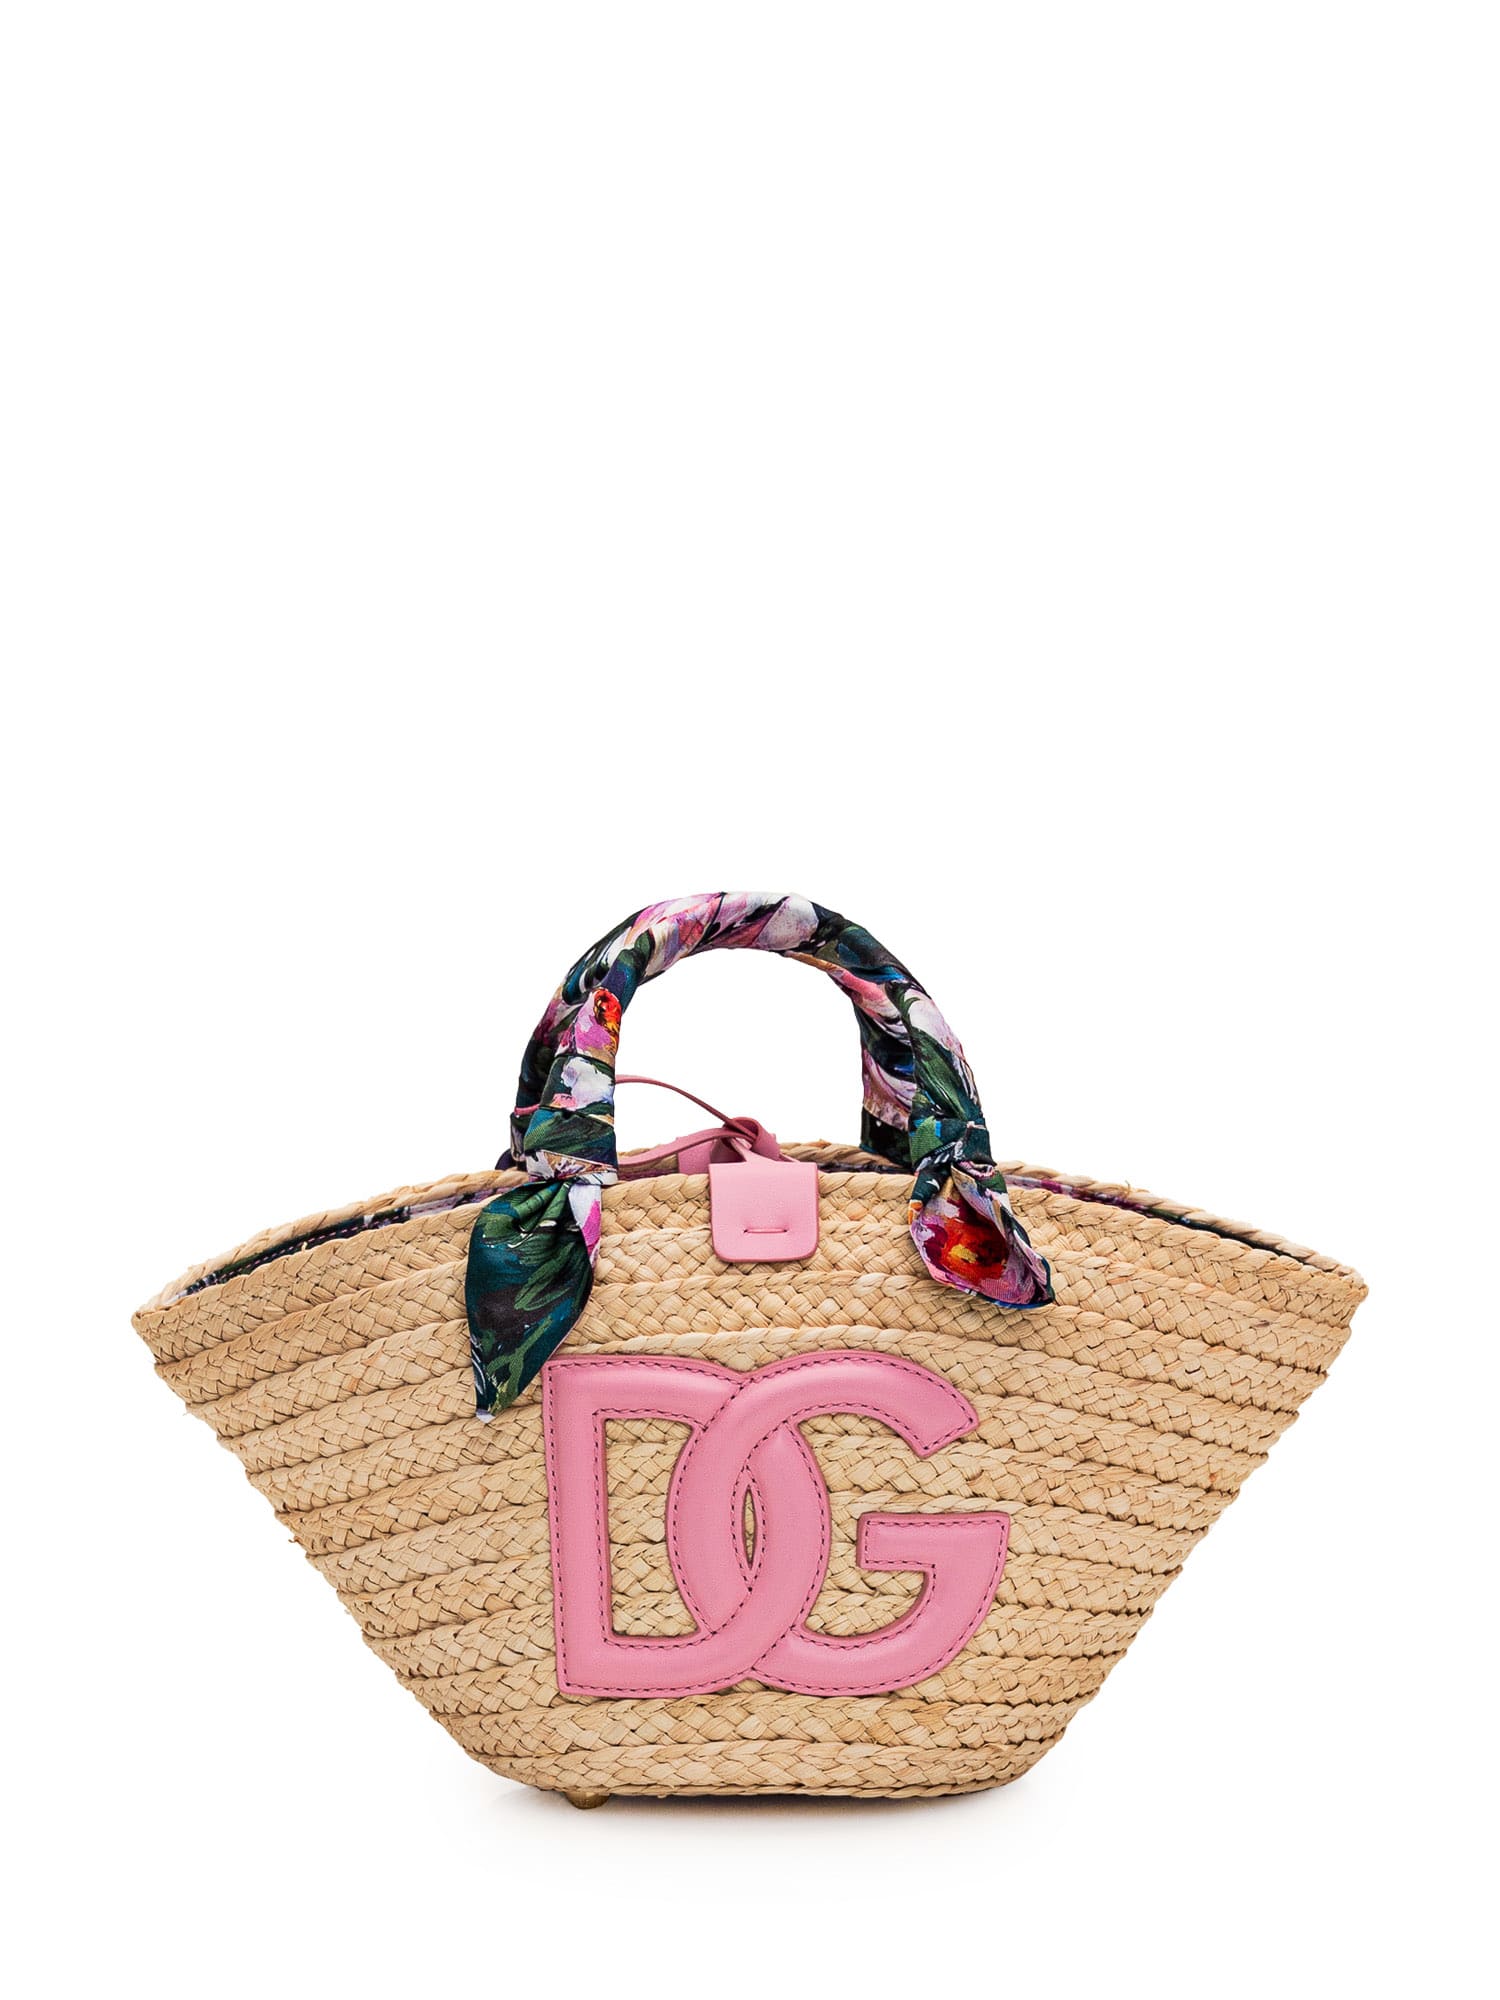 Dolce & Gabbana Kendra Raffia Shopping Bag